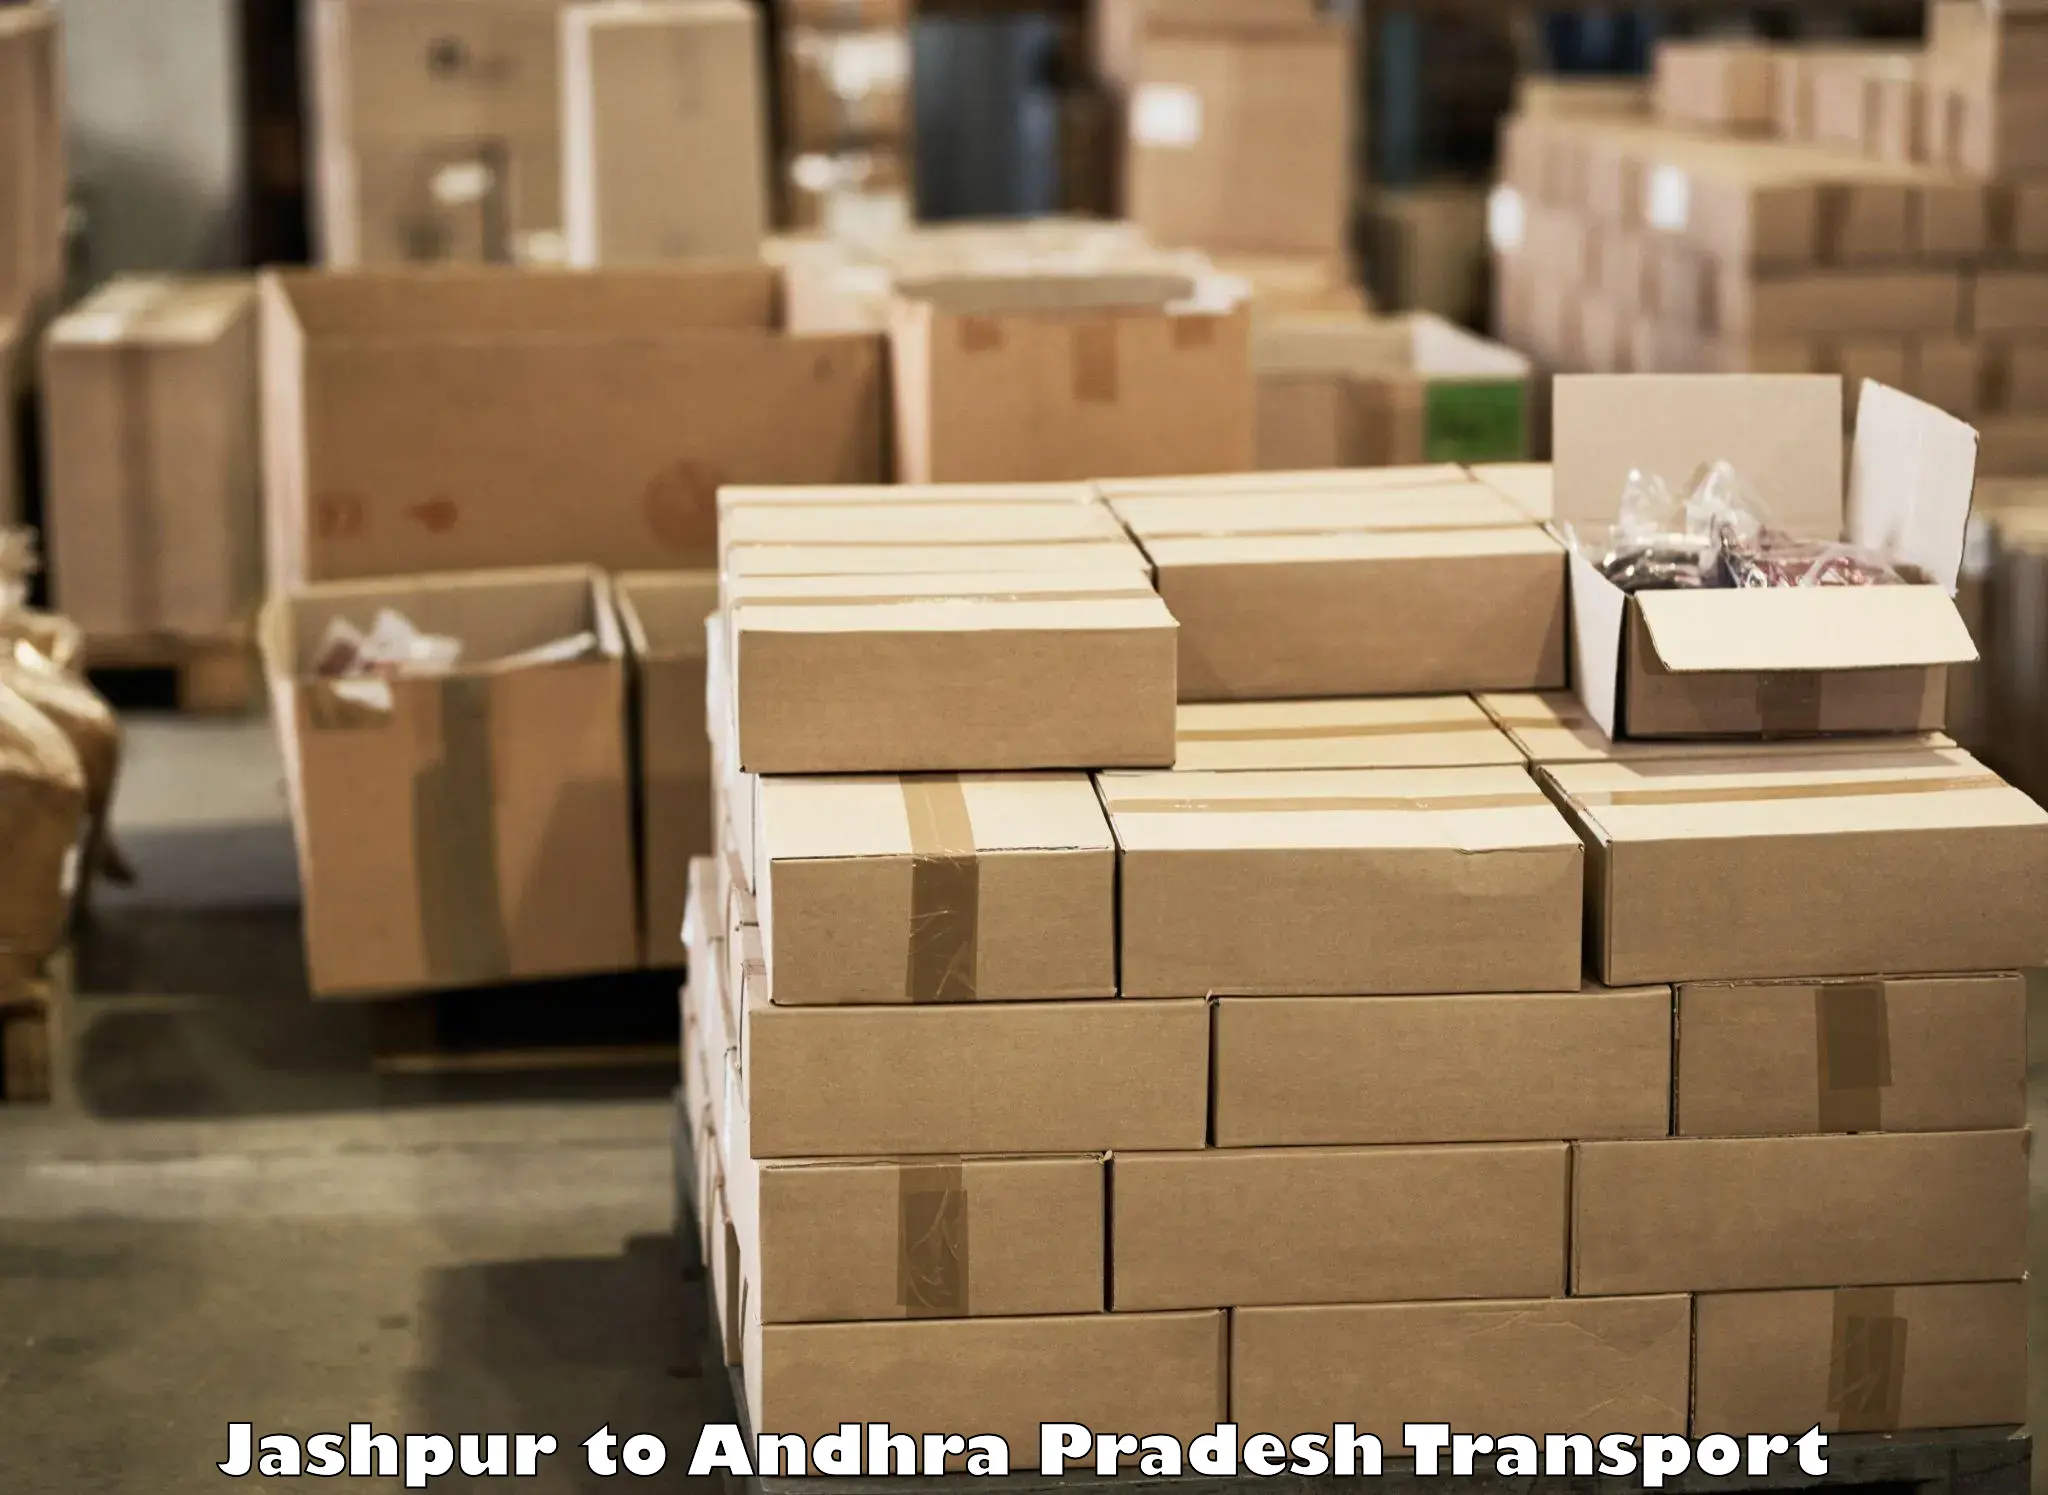 Online transport service Jashpur to Tada Tirupati